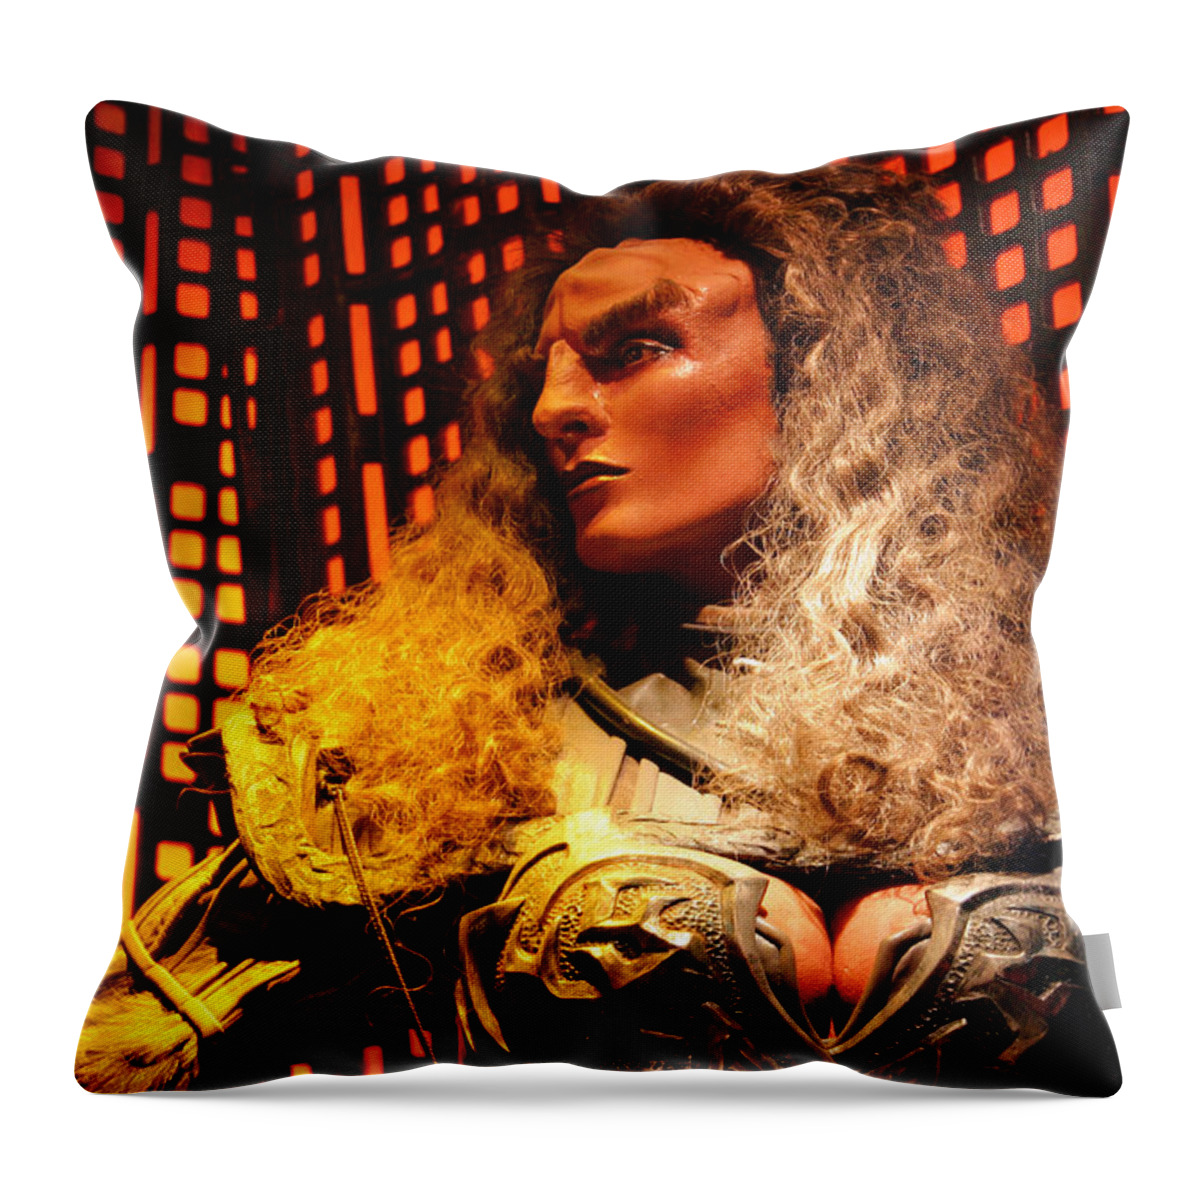 Star Trek Throw Pillow featuring the photograph Klingon by Kristin Elmquist